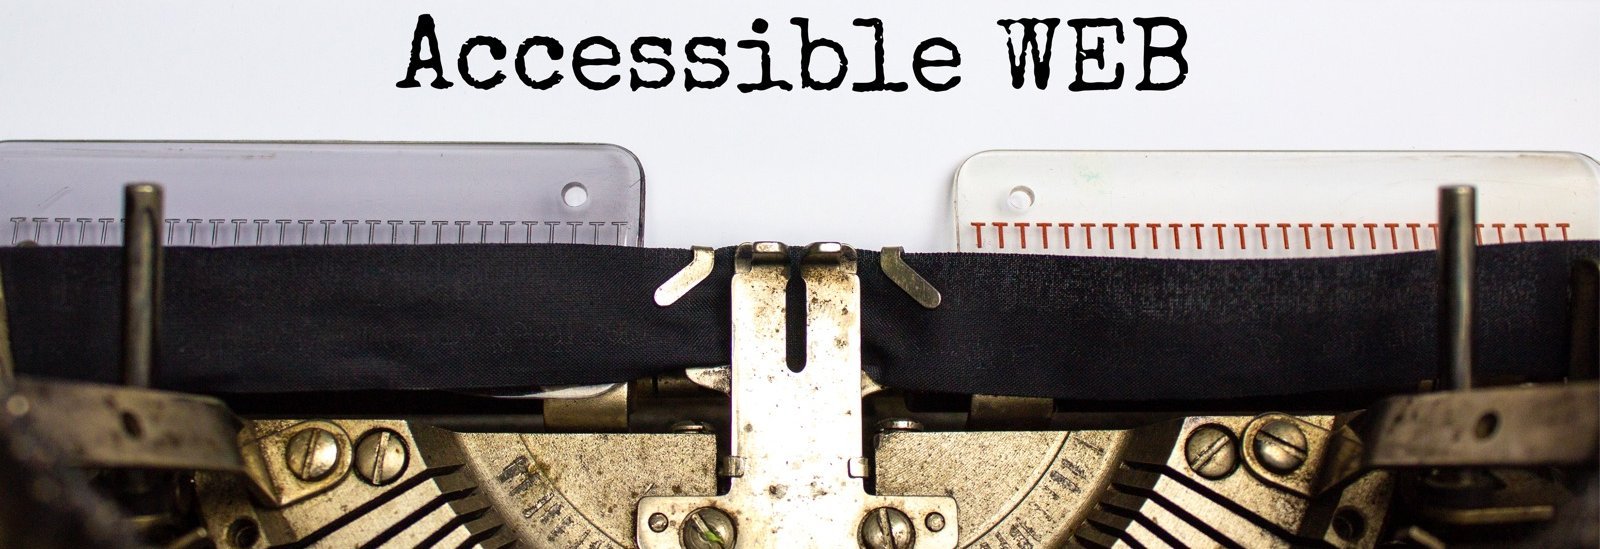 Alte mechanische Schreibmaschine. Auf dem eingespanntem Papier steht getippt "Accessible Web"